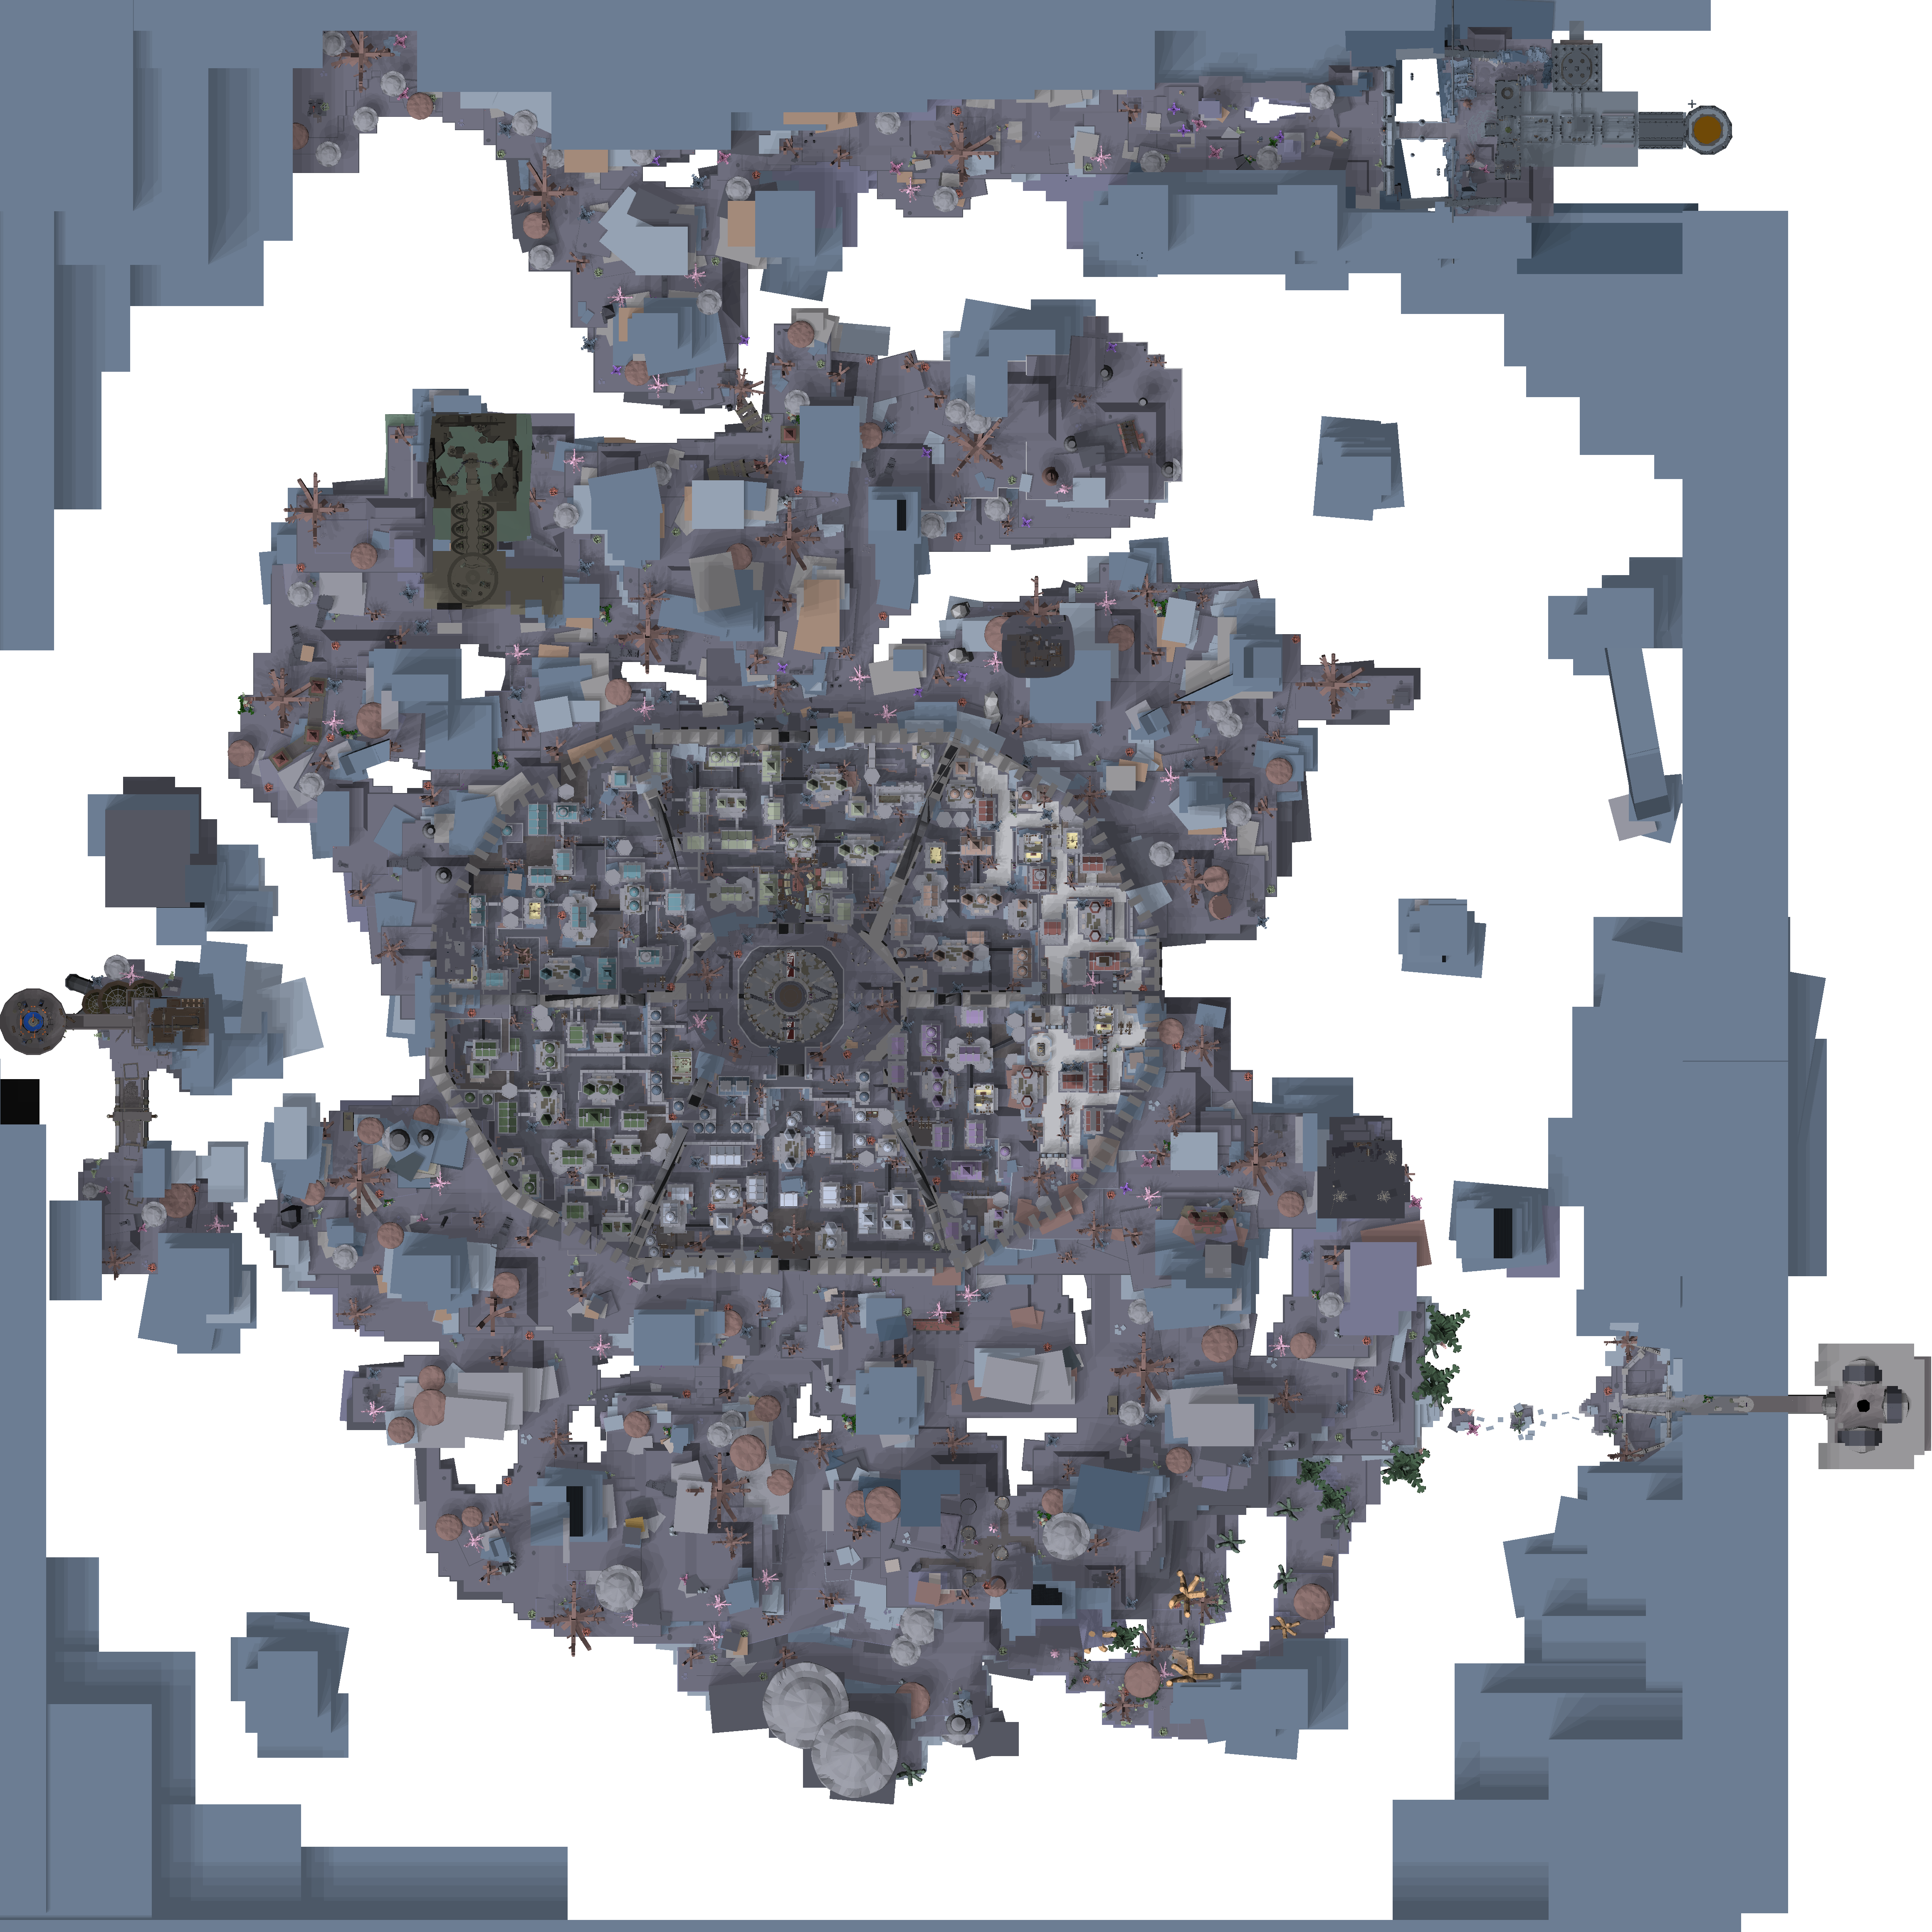 Deepwoken Map of the Depths 